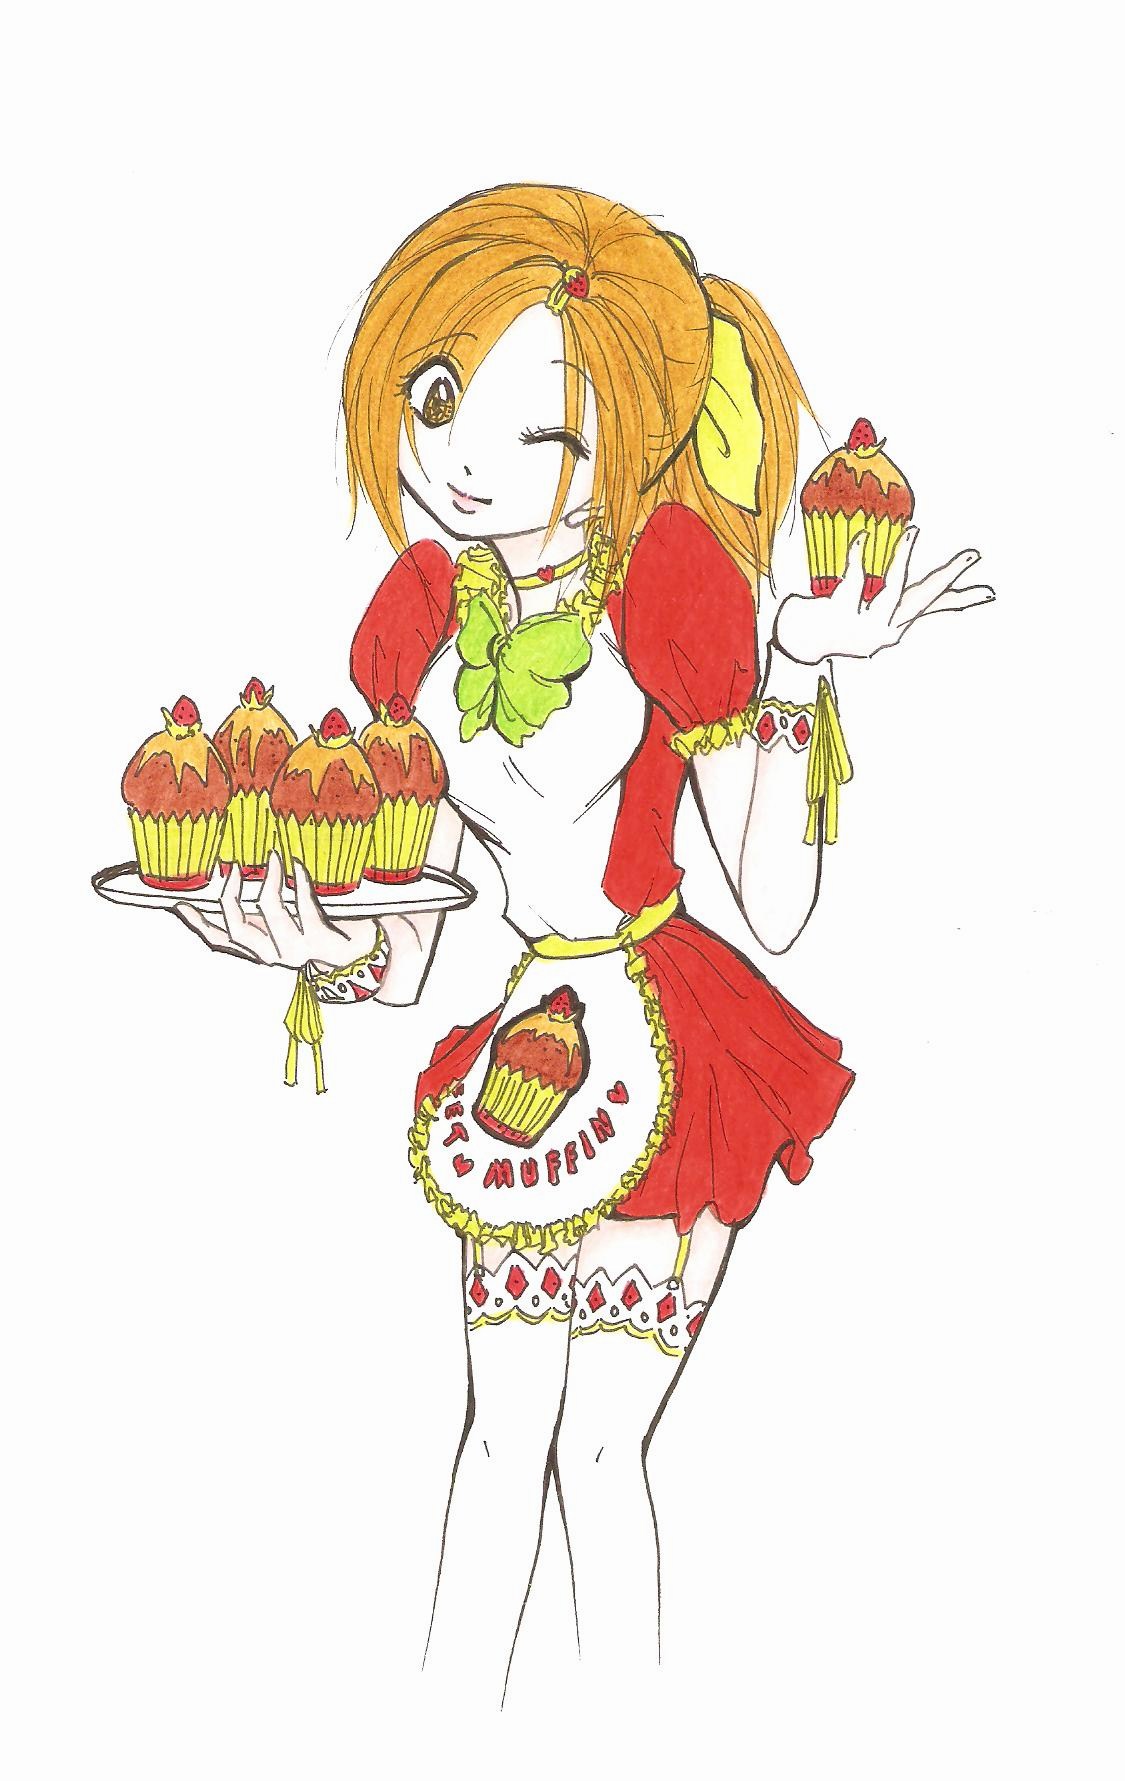 Sweet muffin waitress by MizyMiyajima